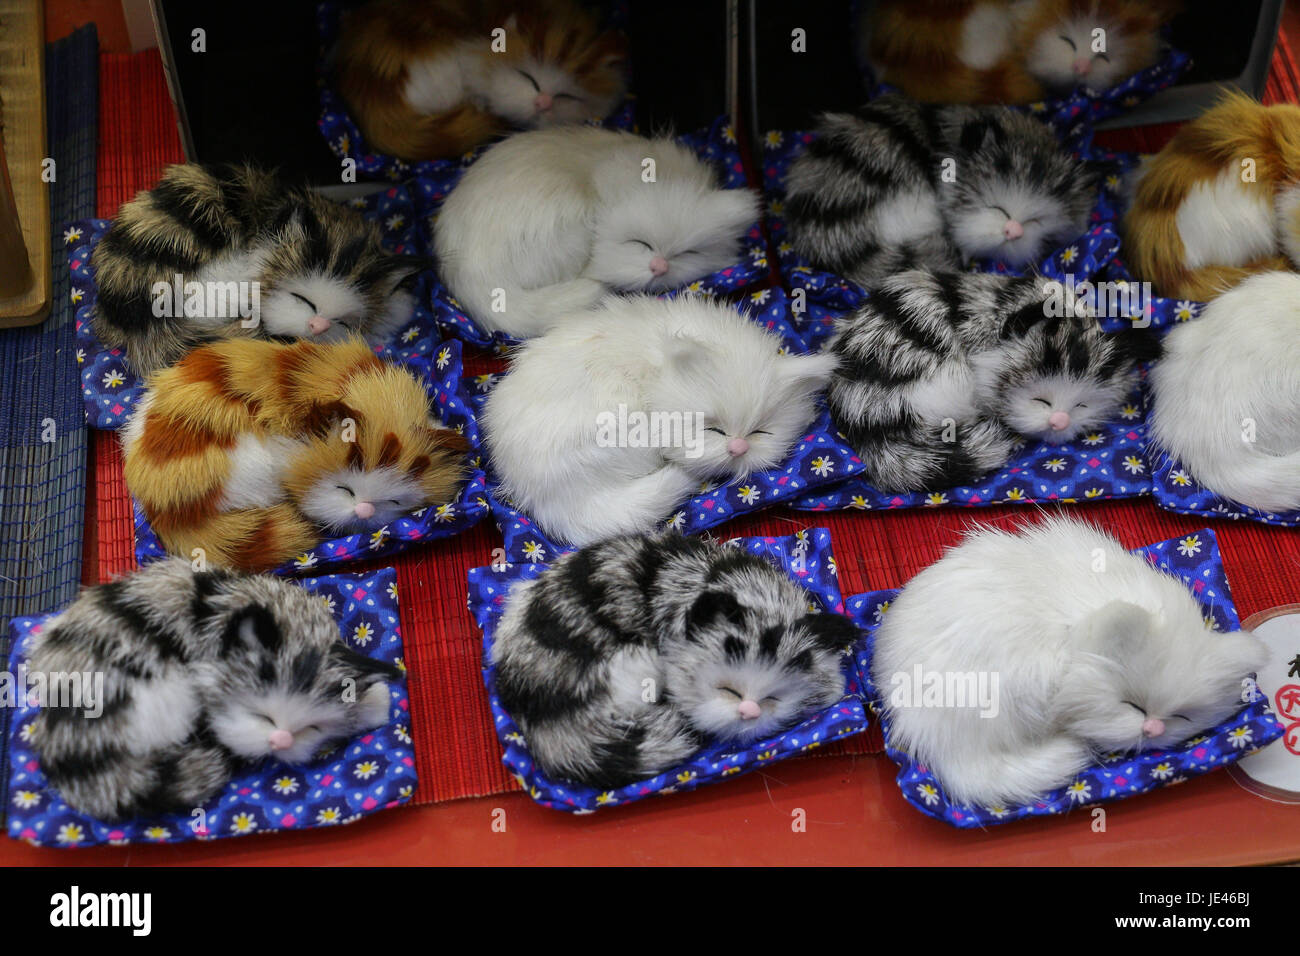 Dans la fenêtre d'un magasin de souvenirs japonais il y avait une étagère-pleine de petits chats couchage réaliste, blanc pur au tigre, endormi sur peu d'oreillers. Banque D'Images